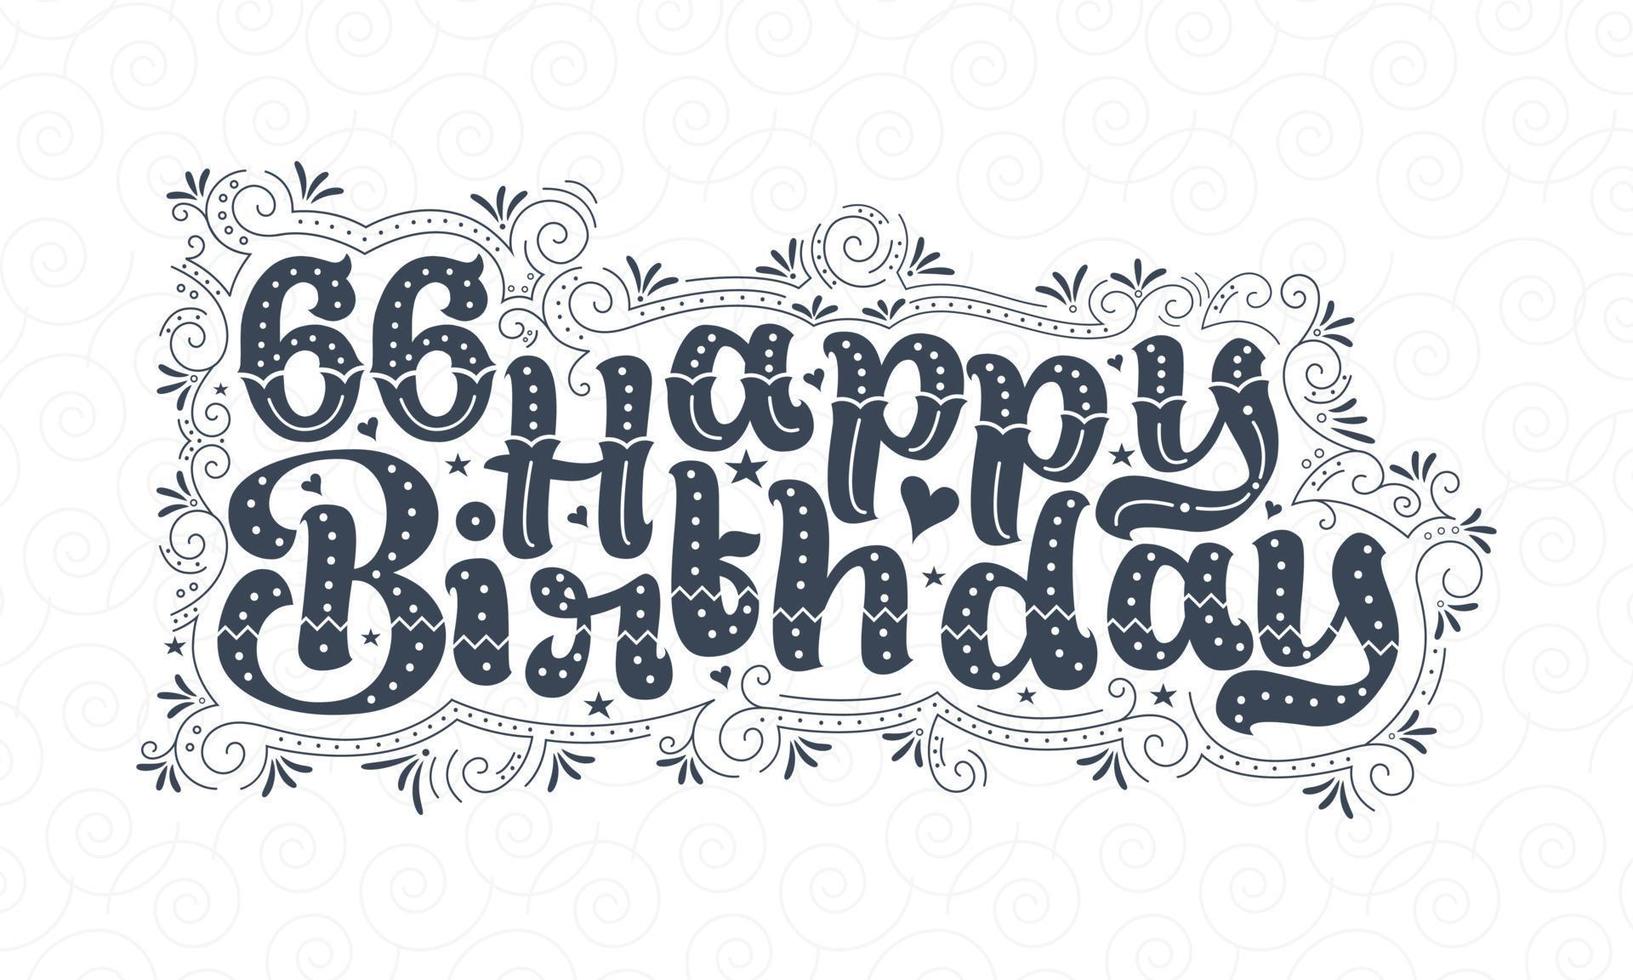 66:e Grattis på födelsedagen bokstäver, 66 års födelsedag vacker typografidesign med prickar, linjer och löv. vektor